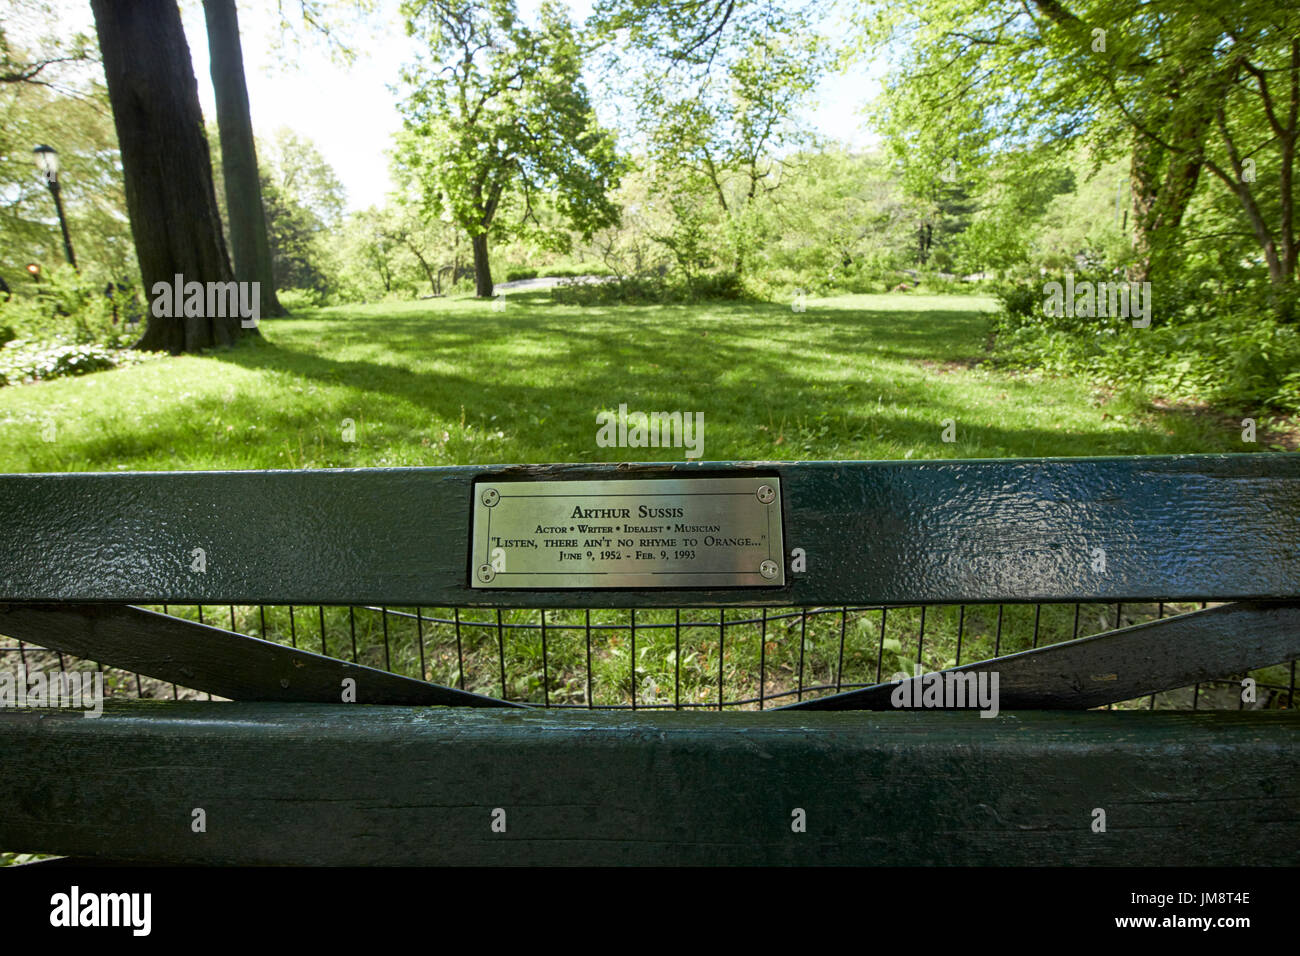 Banco di parco in parco centrale dedicato ad Arthur sussis New York City USA Foto Stock